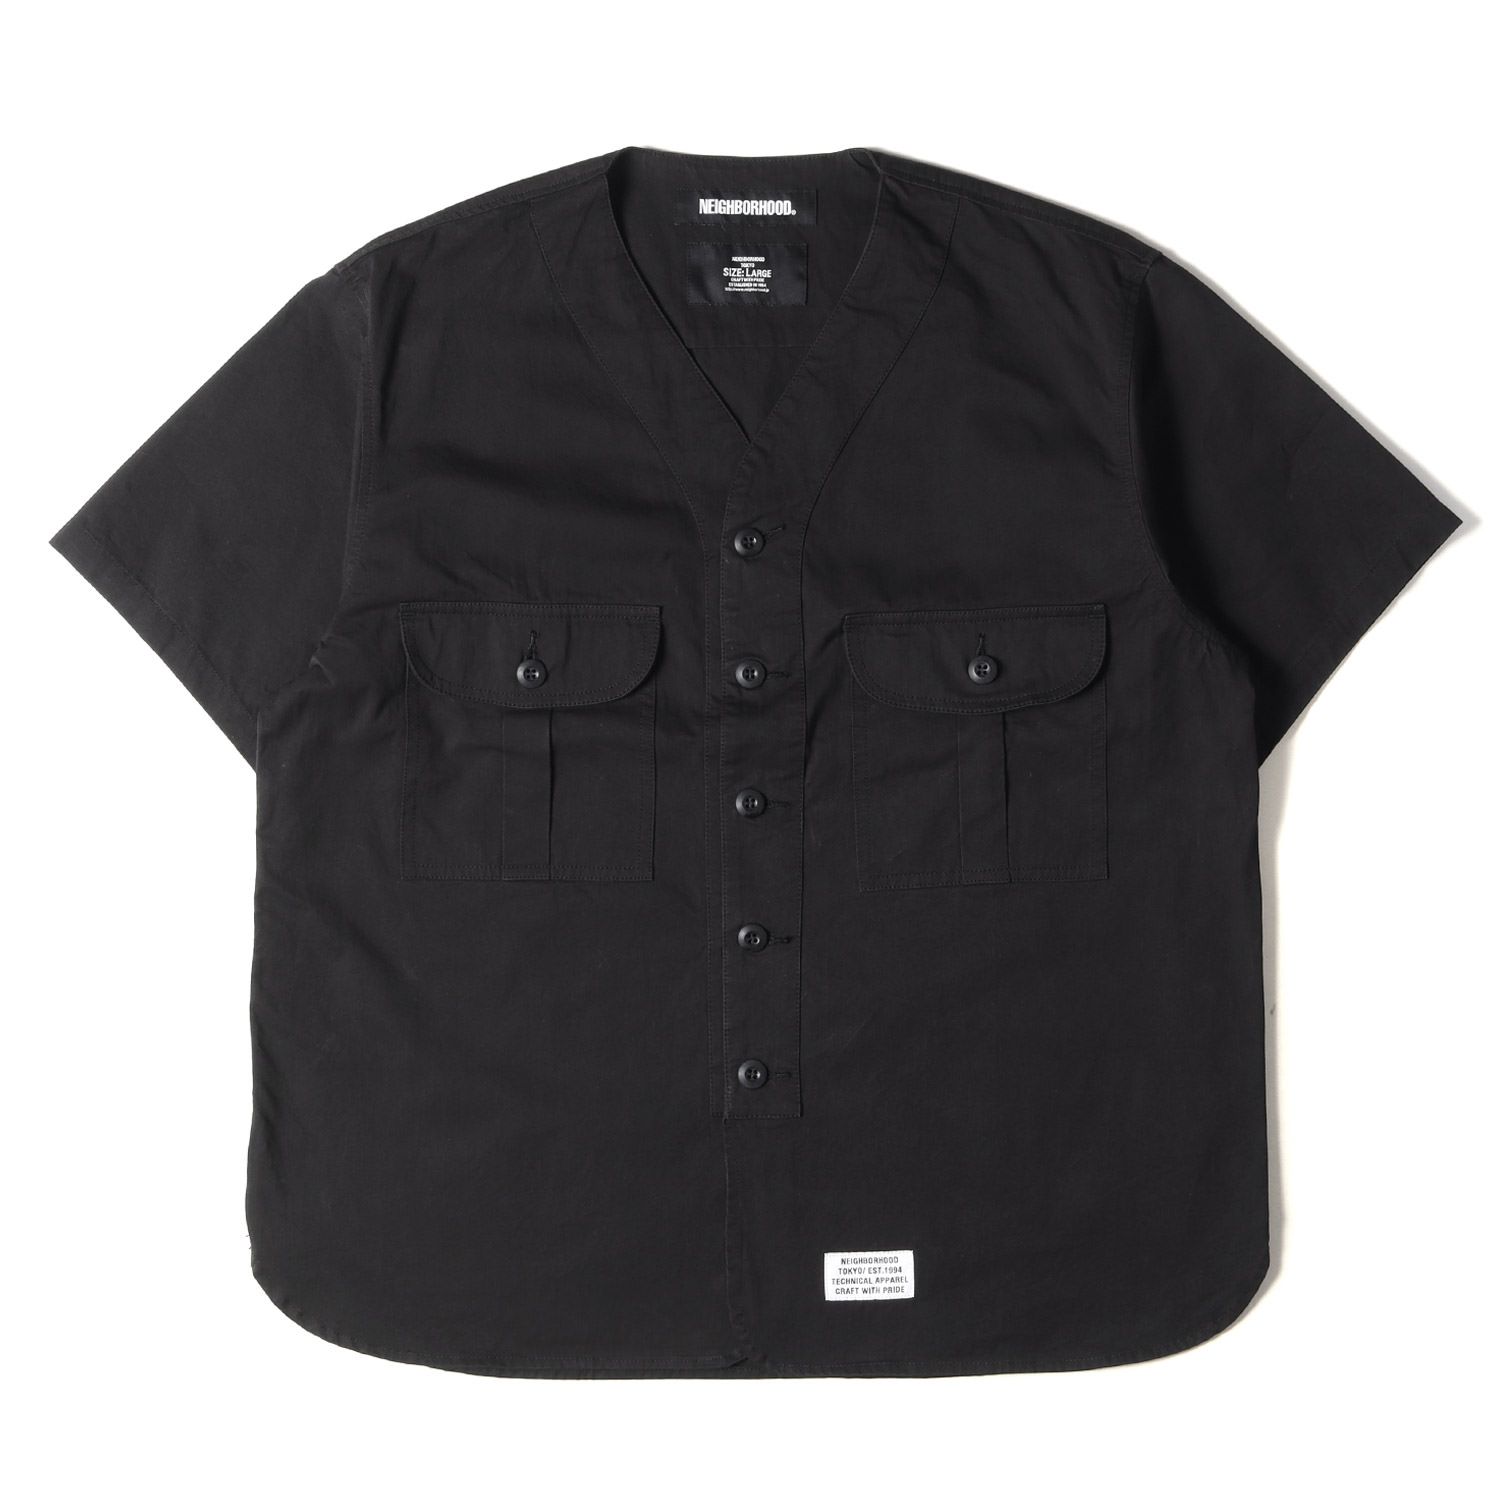 カラーブラックNEIGHBORHOOD ネイバーフッド 半袖シャツ ブラック tkb092